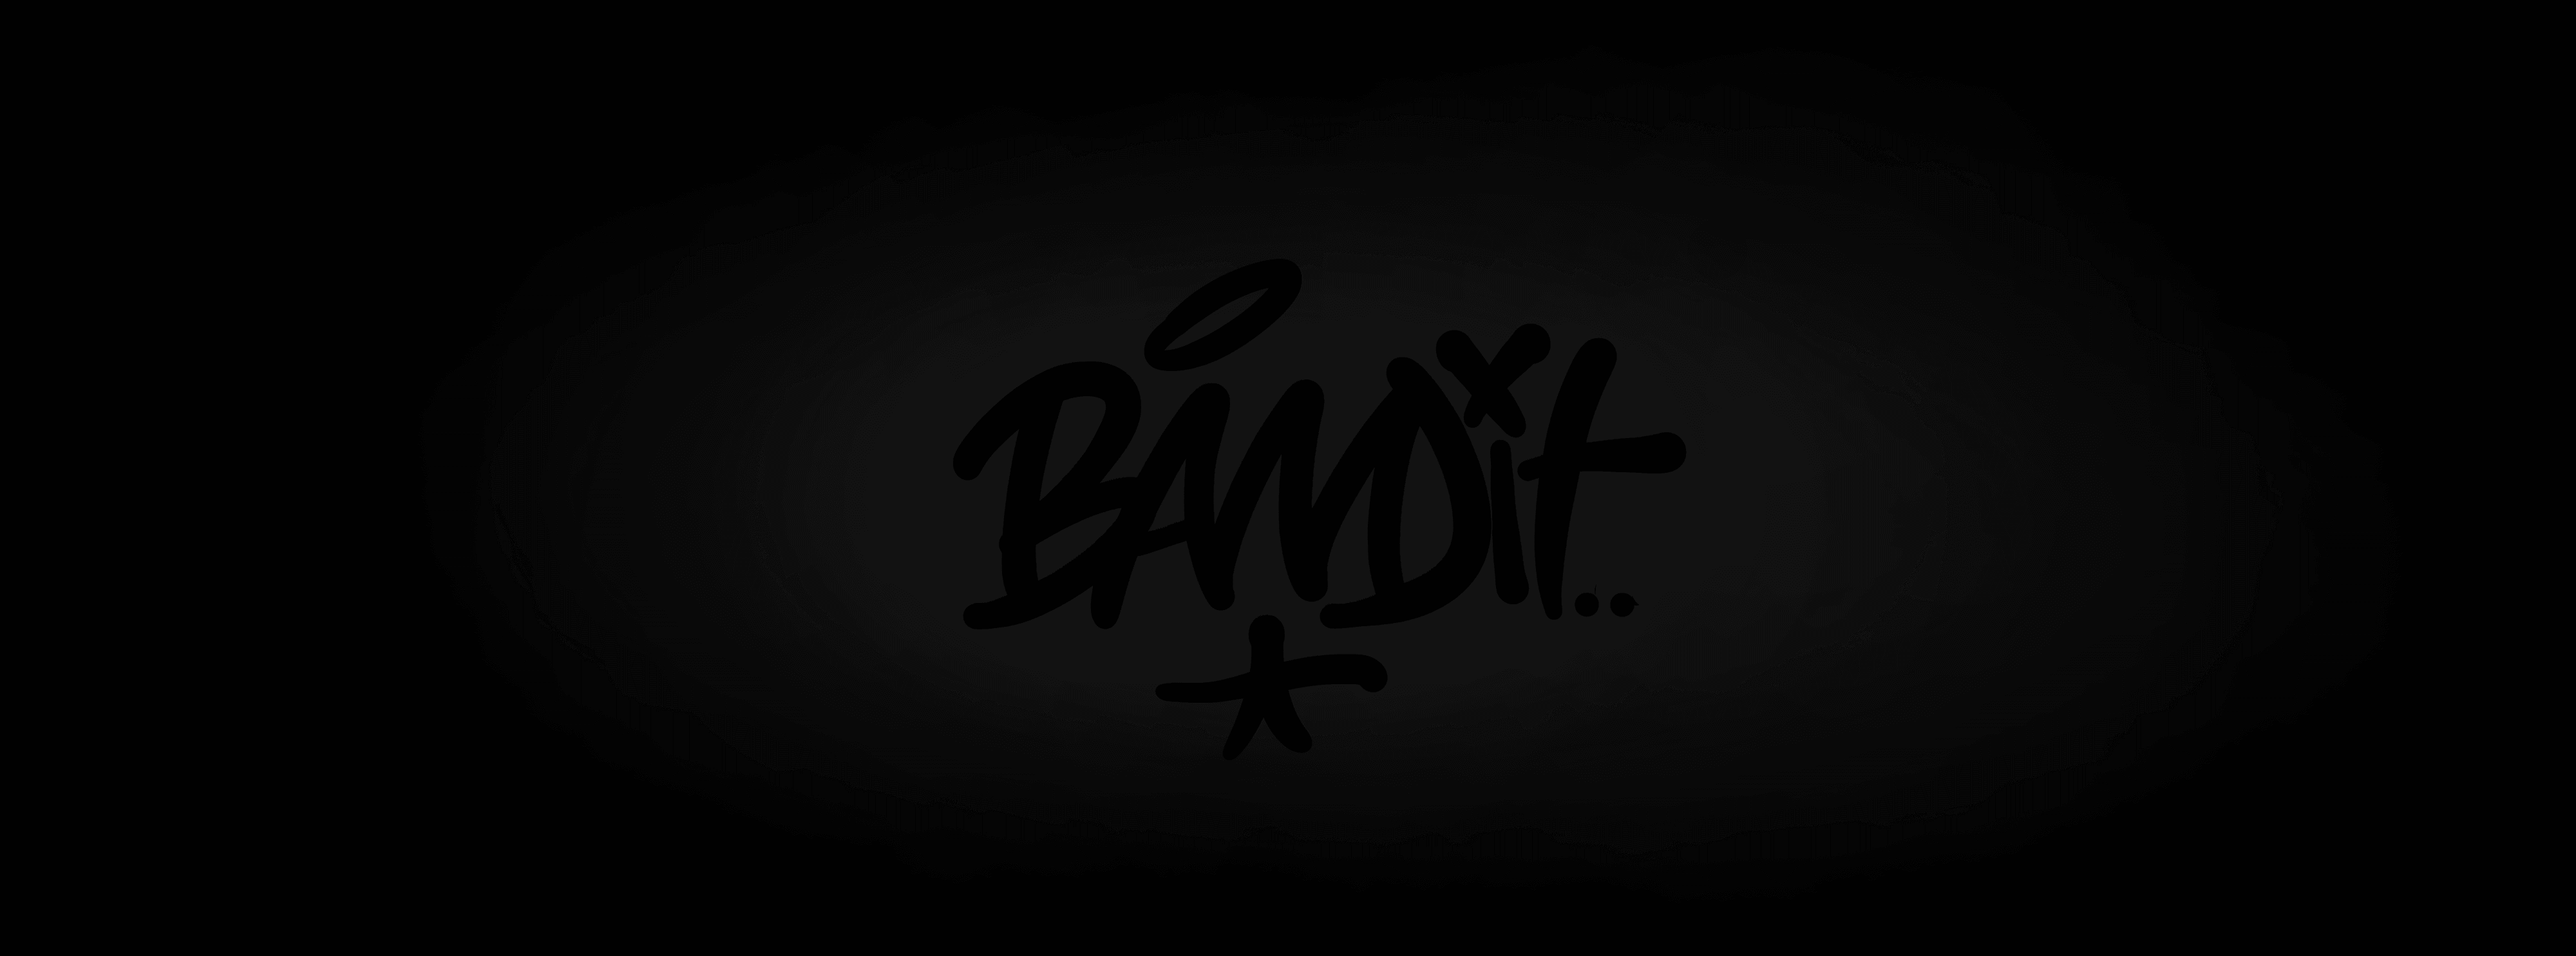 BANDIT-ONE bannière